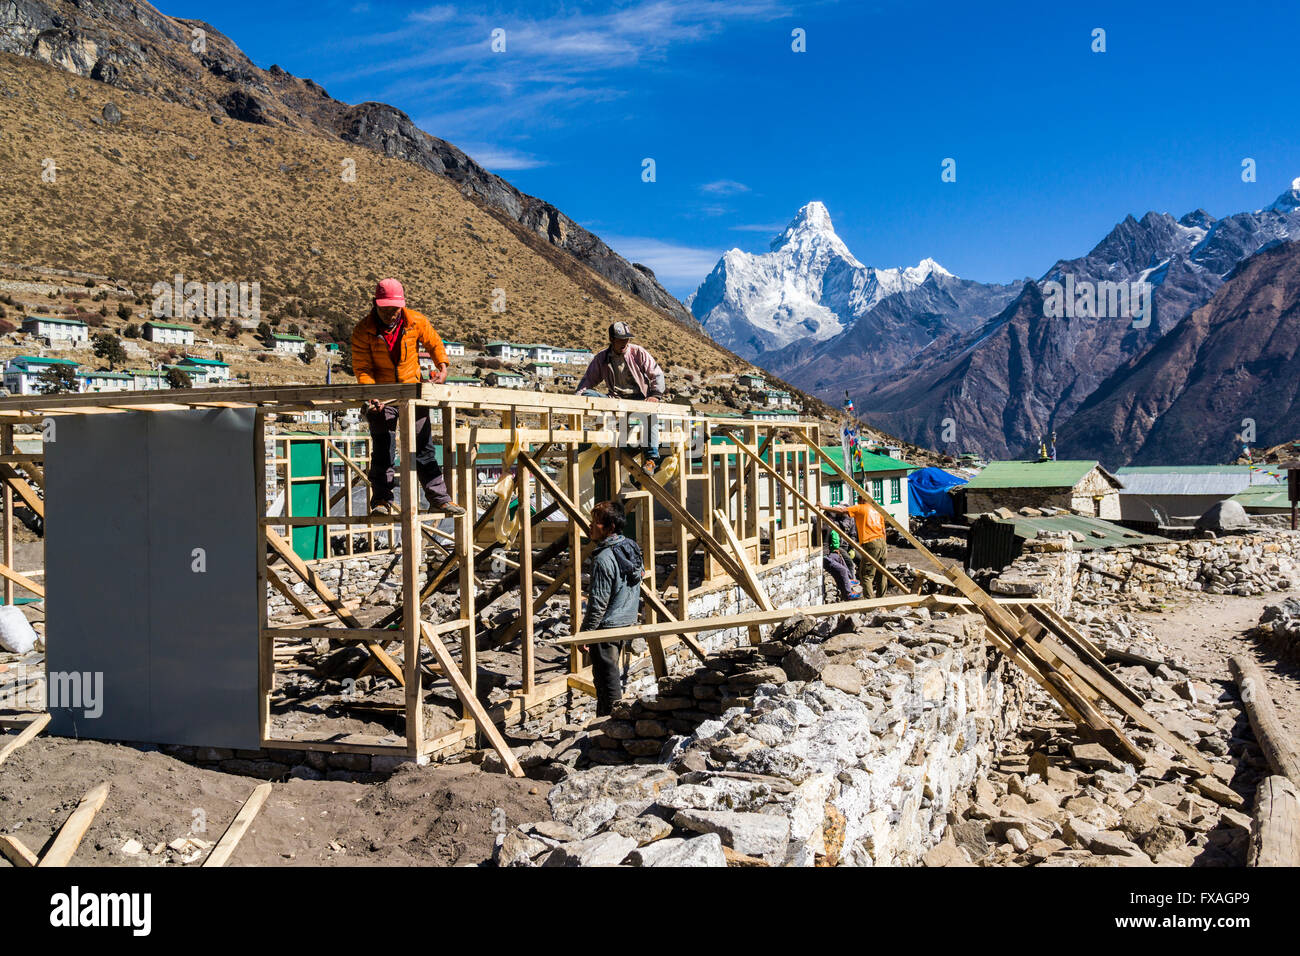 La ricostruzione delle case distrutte dal terremoto del 2015, Ama Dablam (6856m) montagna in distanza, Khumjung Foto Stock